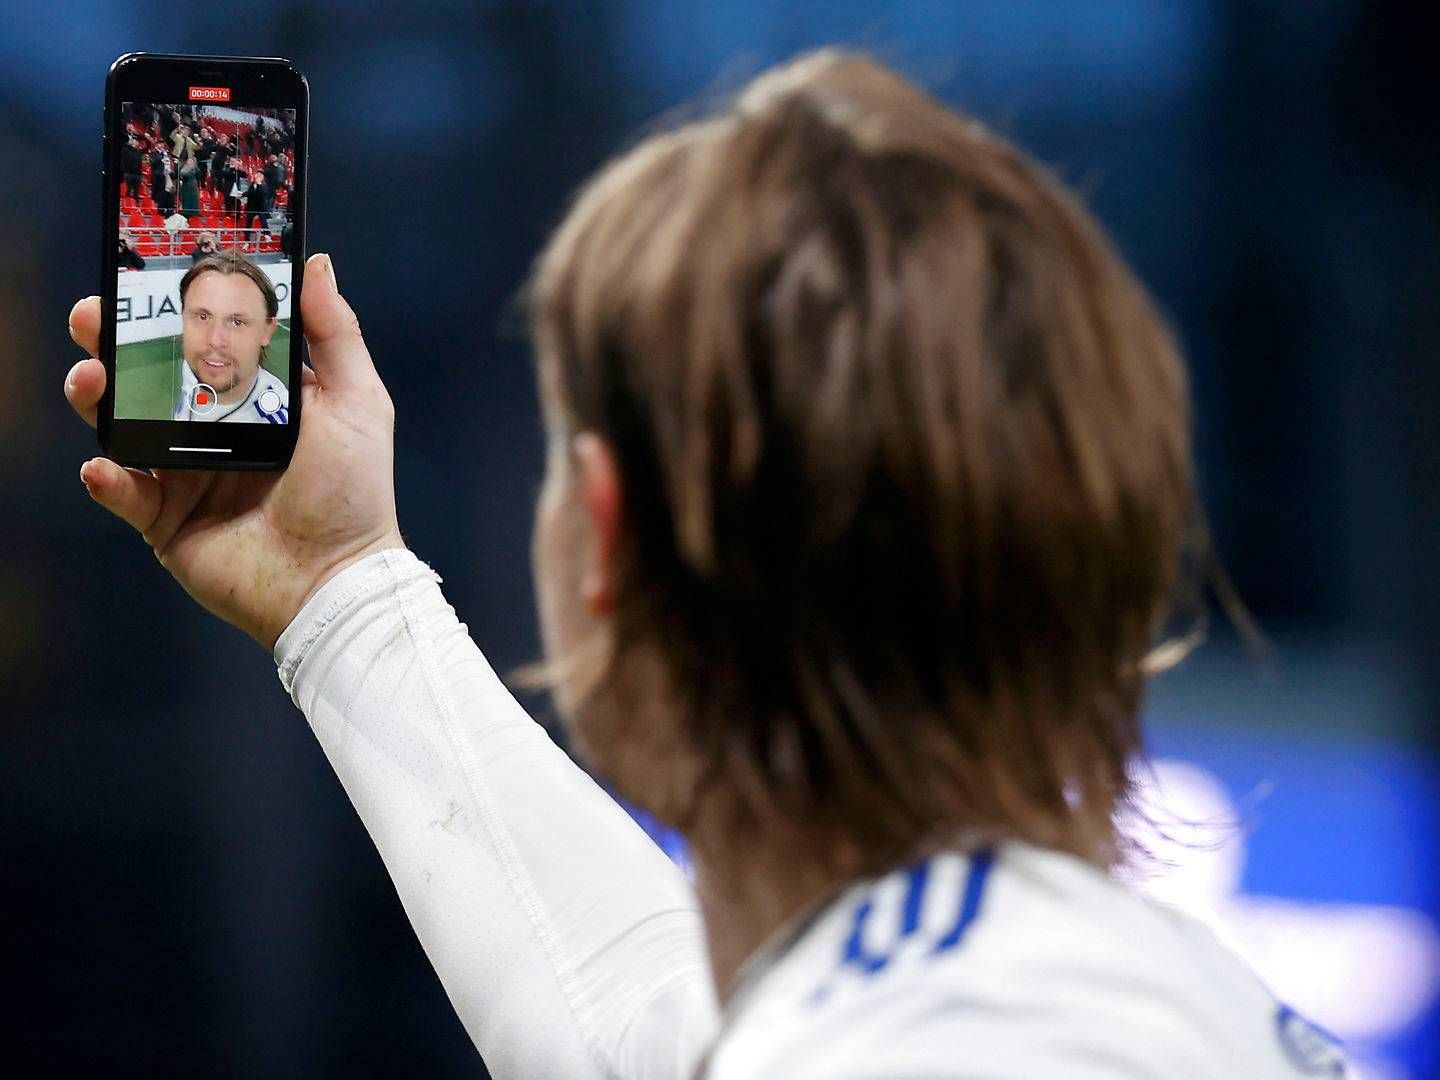 Kendte sportfolk med store fanskarer på sociale medier kan med appen Hero tjene penge gennem direkte abonnementsbetaling. | Foto: Jens Dresling/Ritzau Scanpix